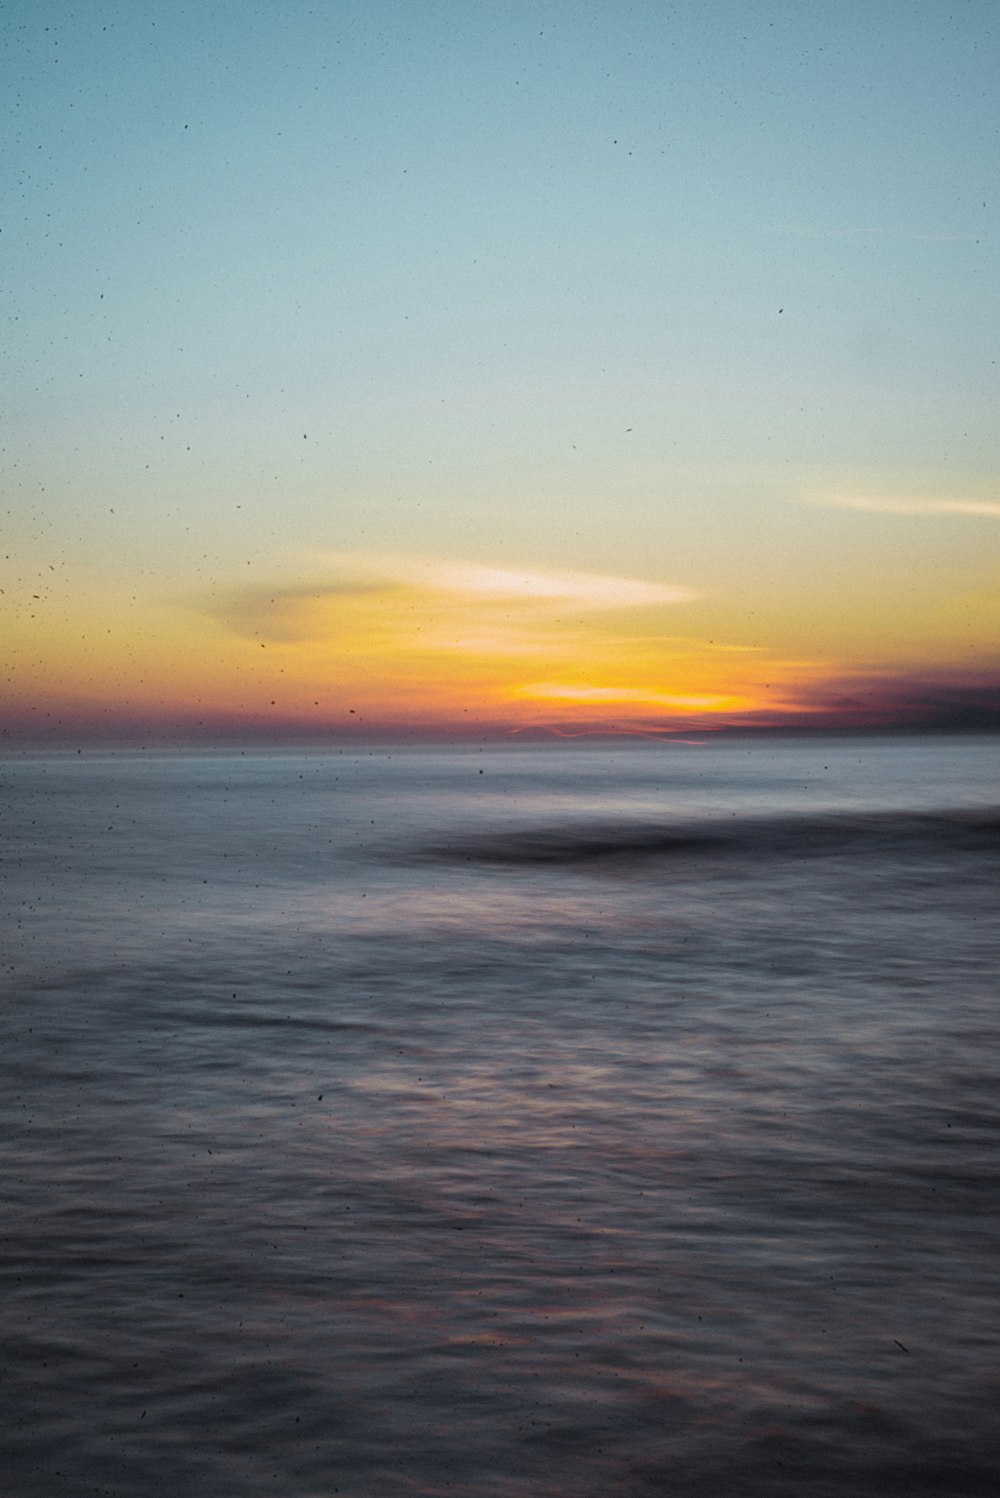 Il sole sta tramontando sull'oceano con le onde